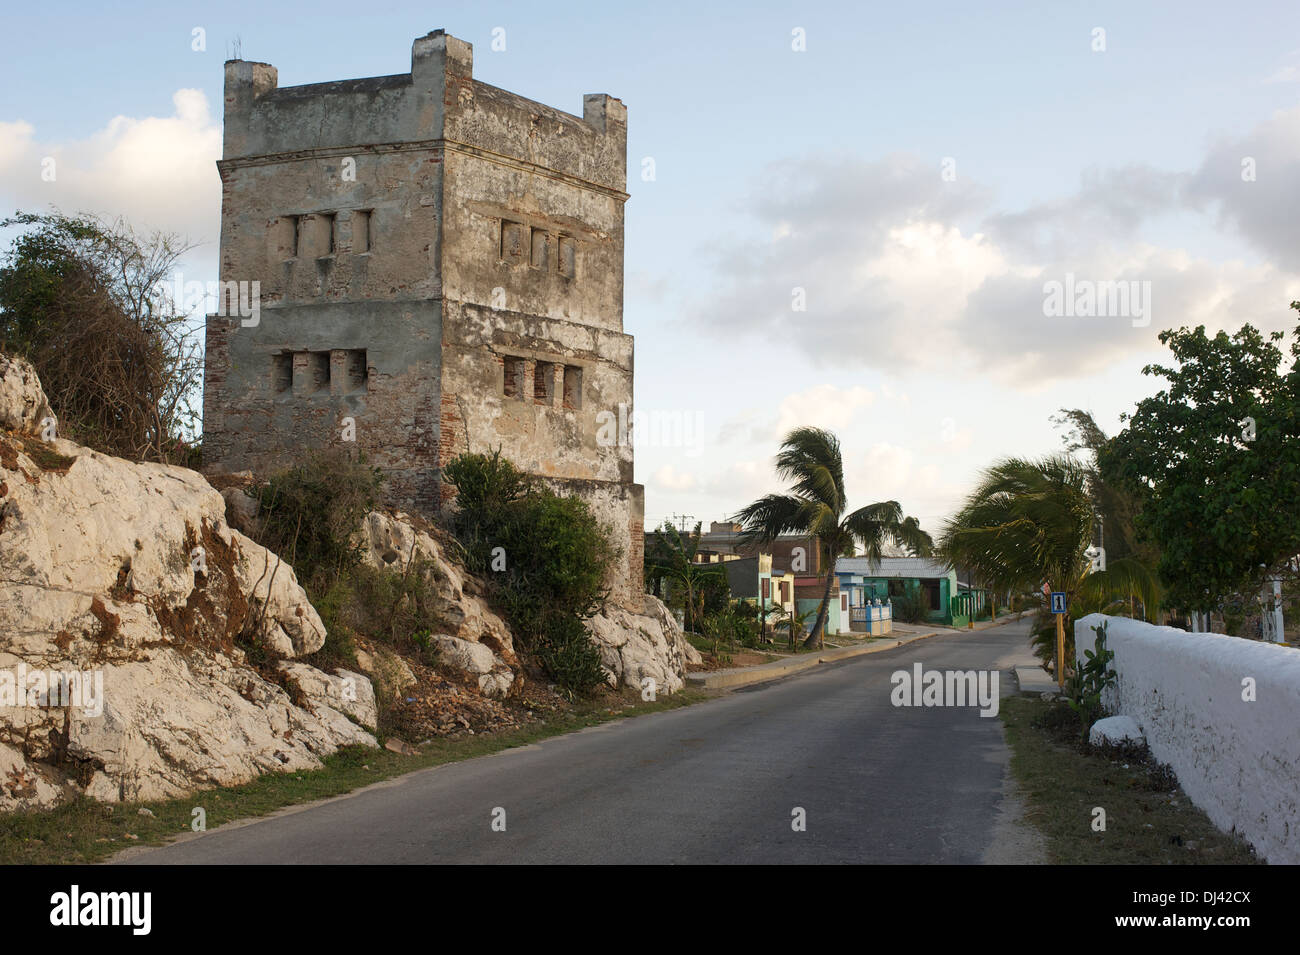 La fortificación de la torre, Gibara, Cuba Foto de stock